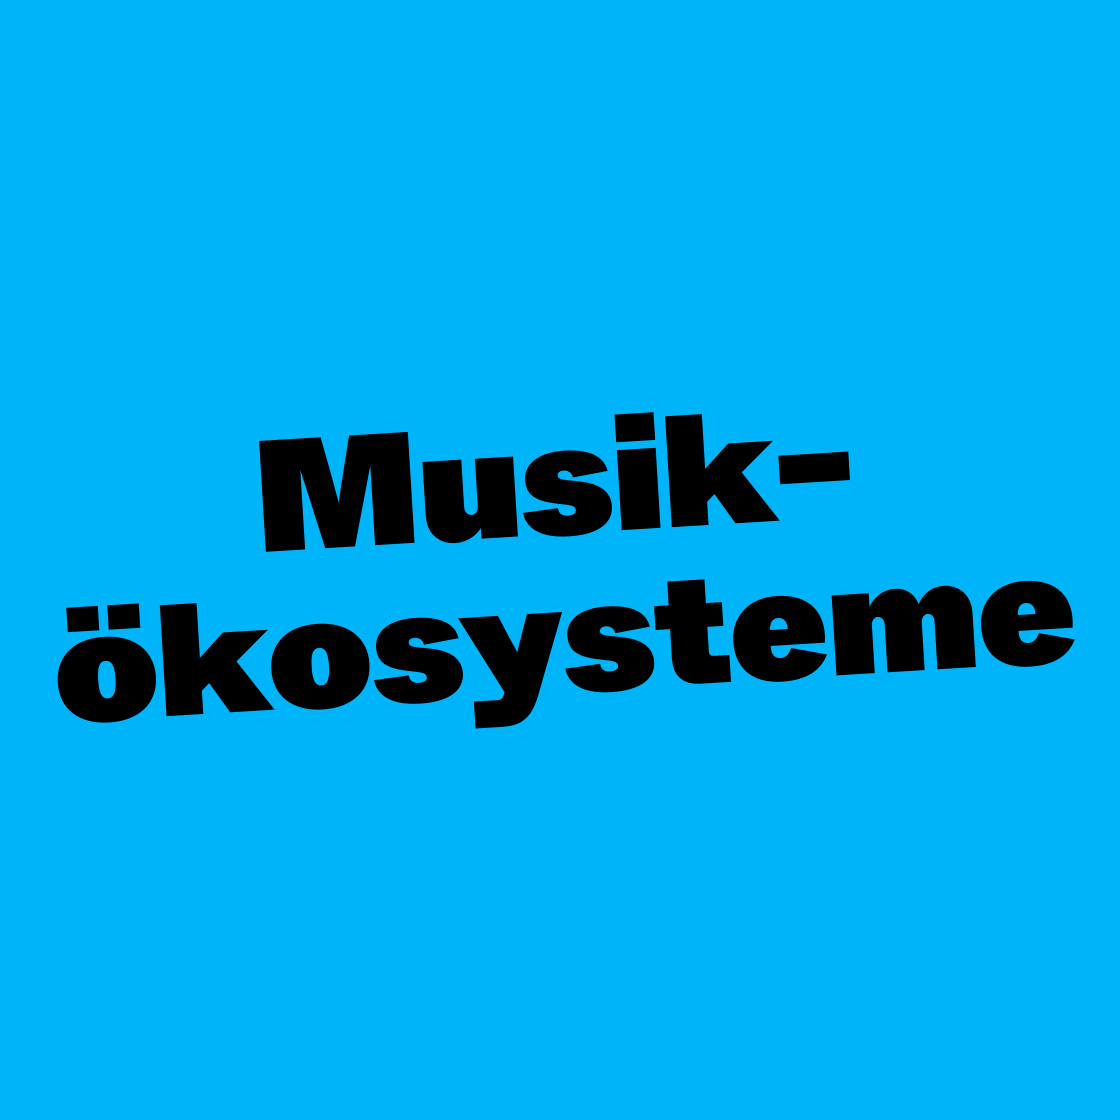 Musikökosysteme